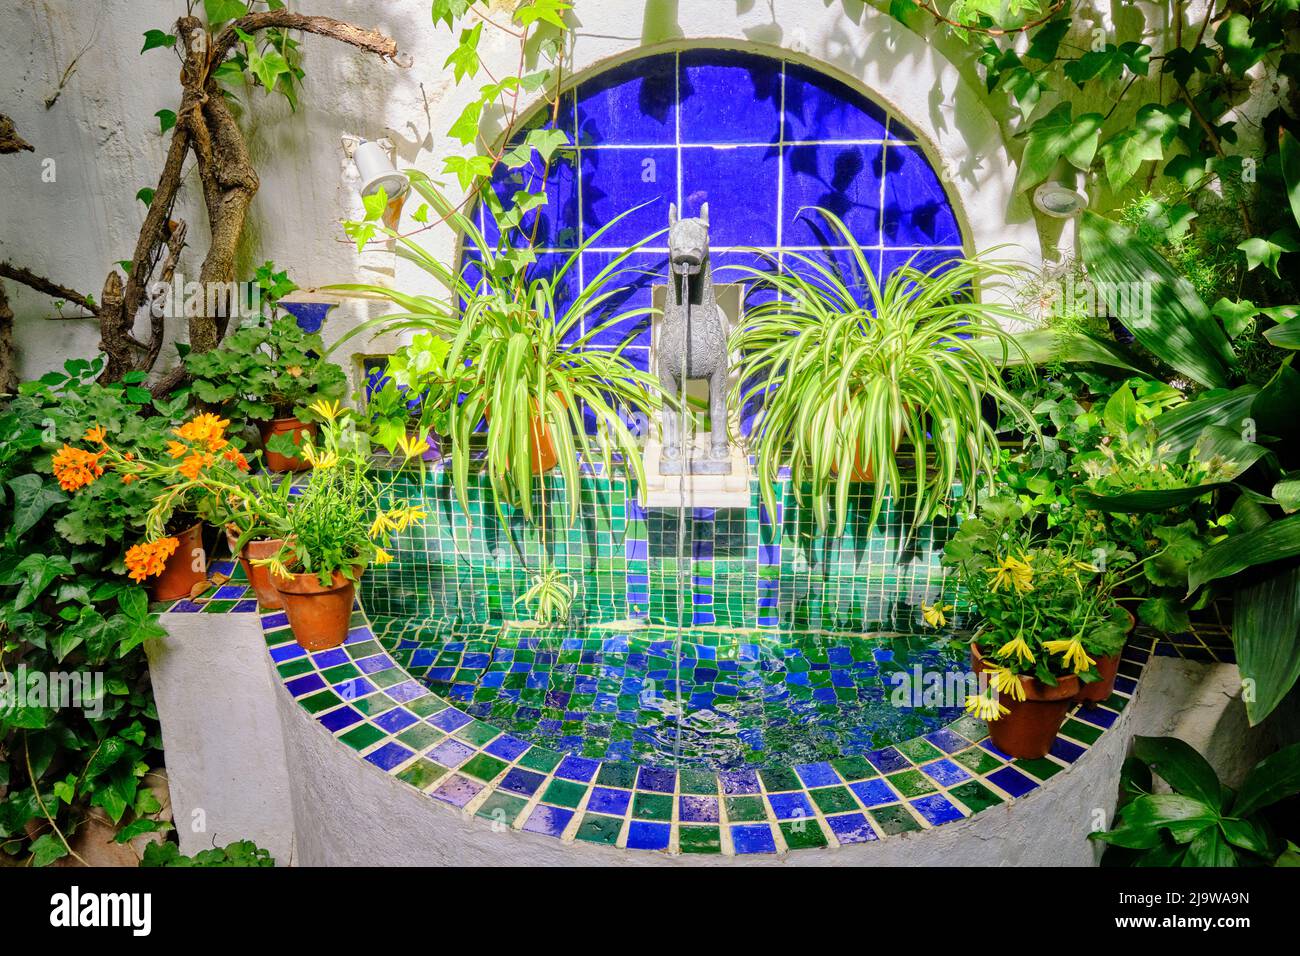 La fontaine, source d'eau, bien-être et fraîcheur dans les patios de Cordoue. Andalousie, Espagne Banque D'Images